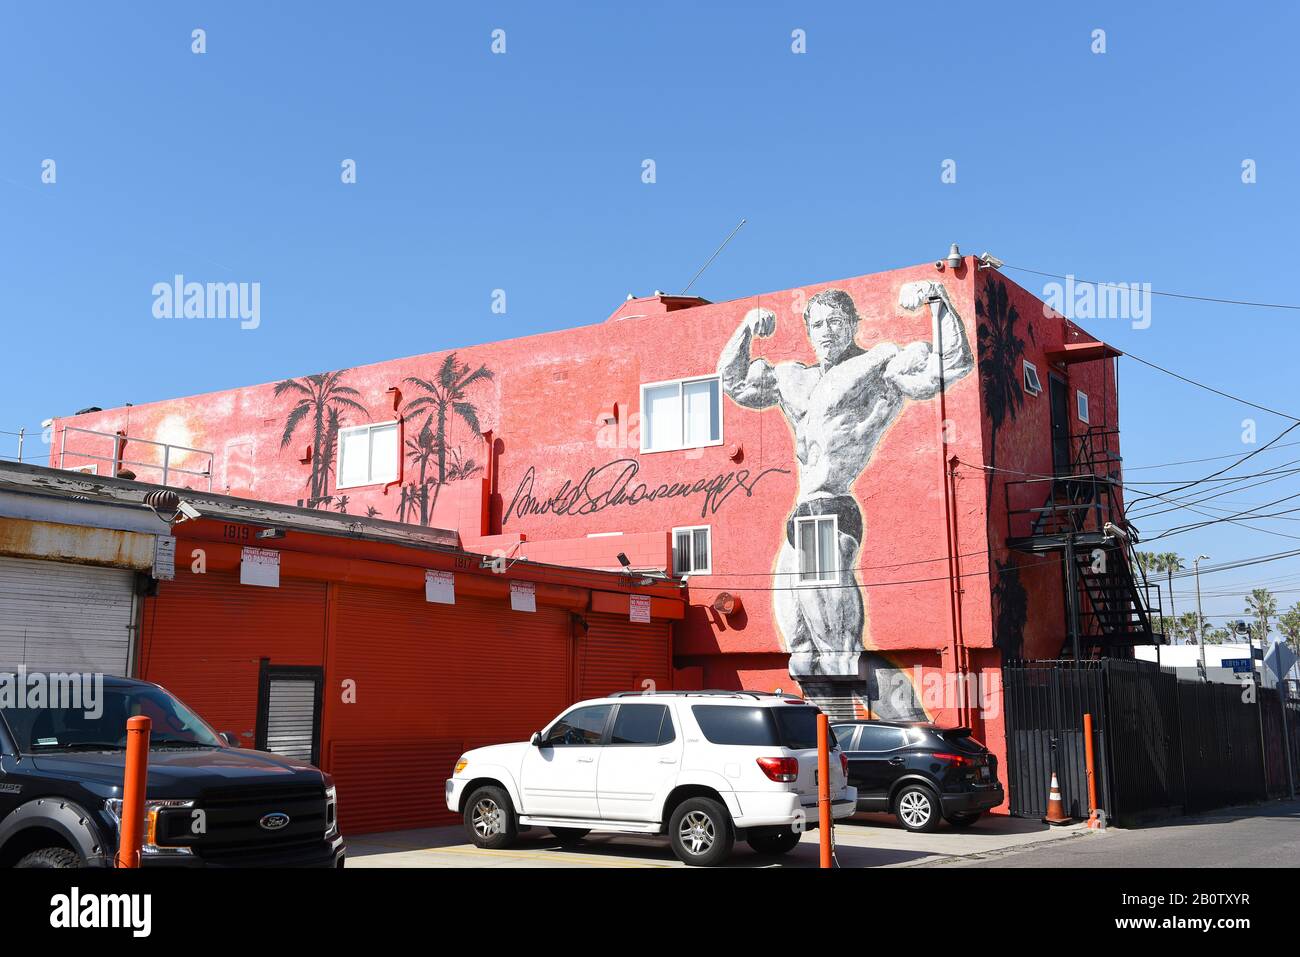 Venise, CALIFORNIE - 17 FÉVRIER 2020: Arnold Schwarzenegger murale sur un bâtiment extérieur dans la ville touristique populaire. Banque D'Images